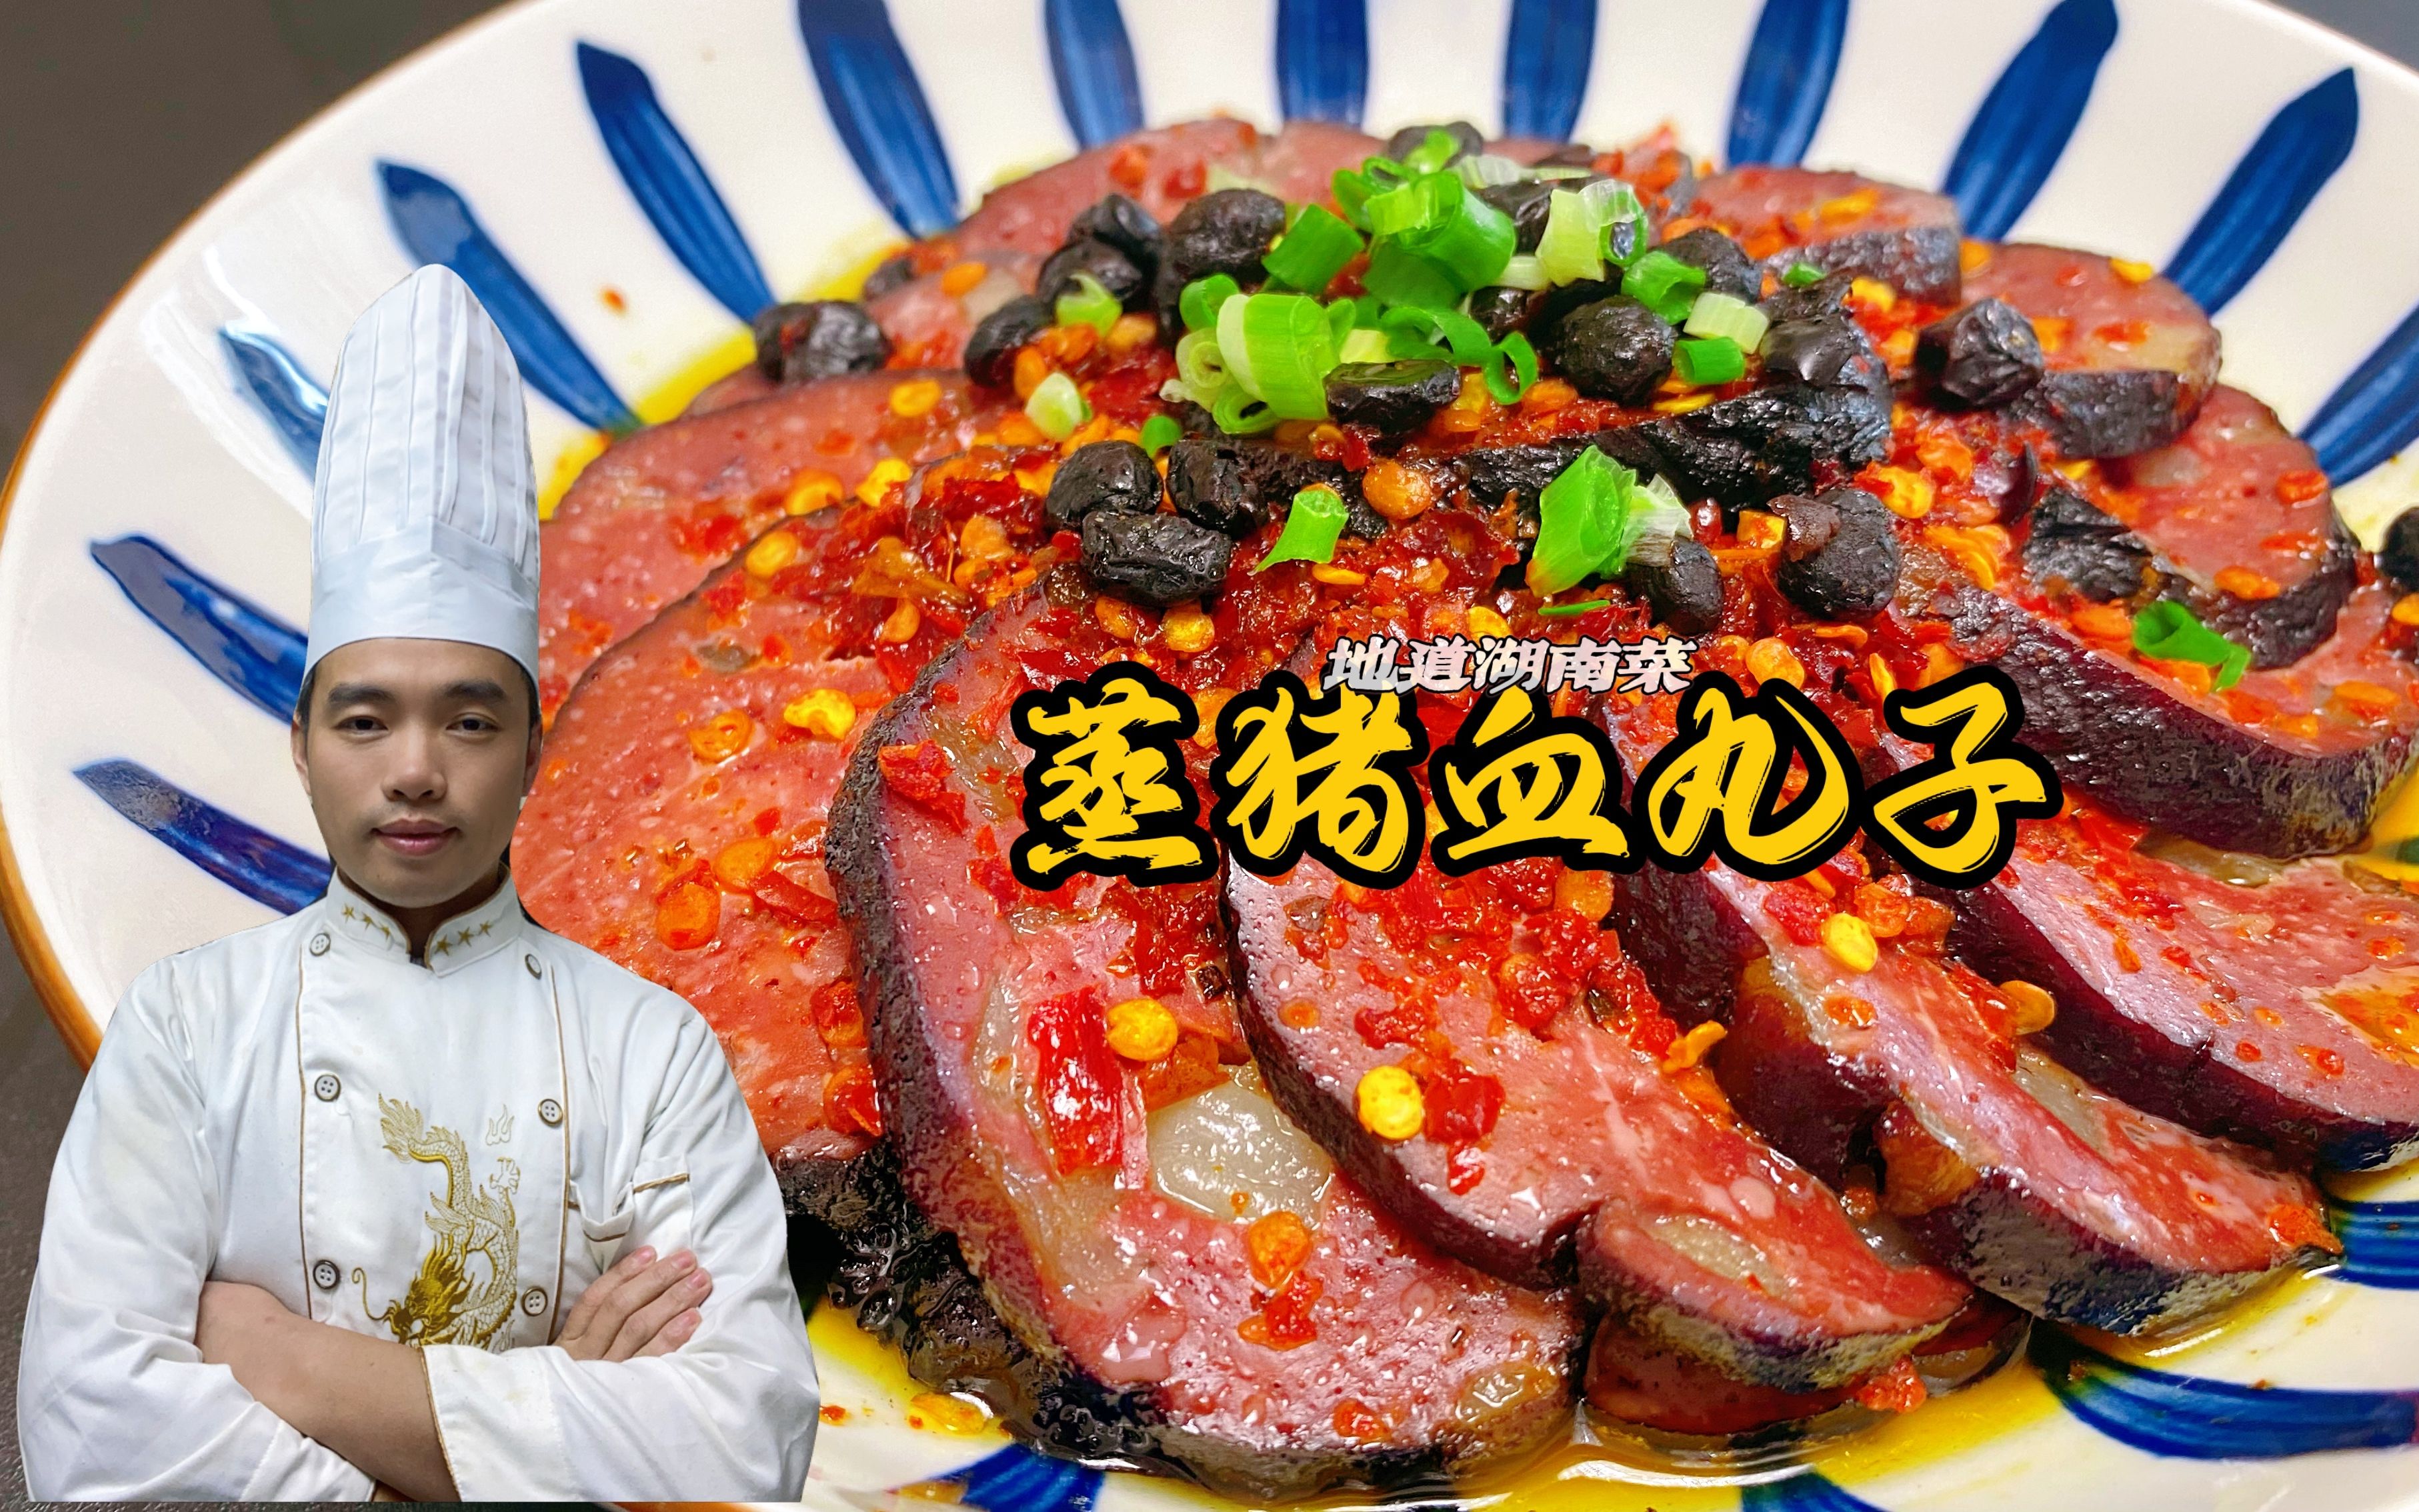 炒四个邵阳特产猪血丸子饱吃一餐-美食视频-搜狐视频